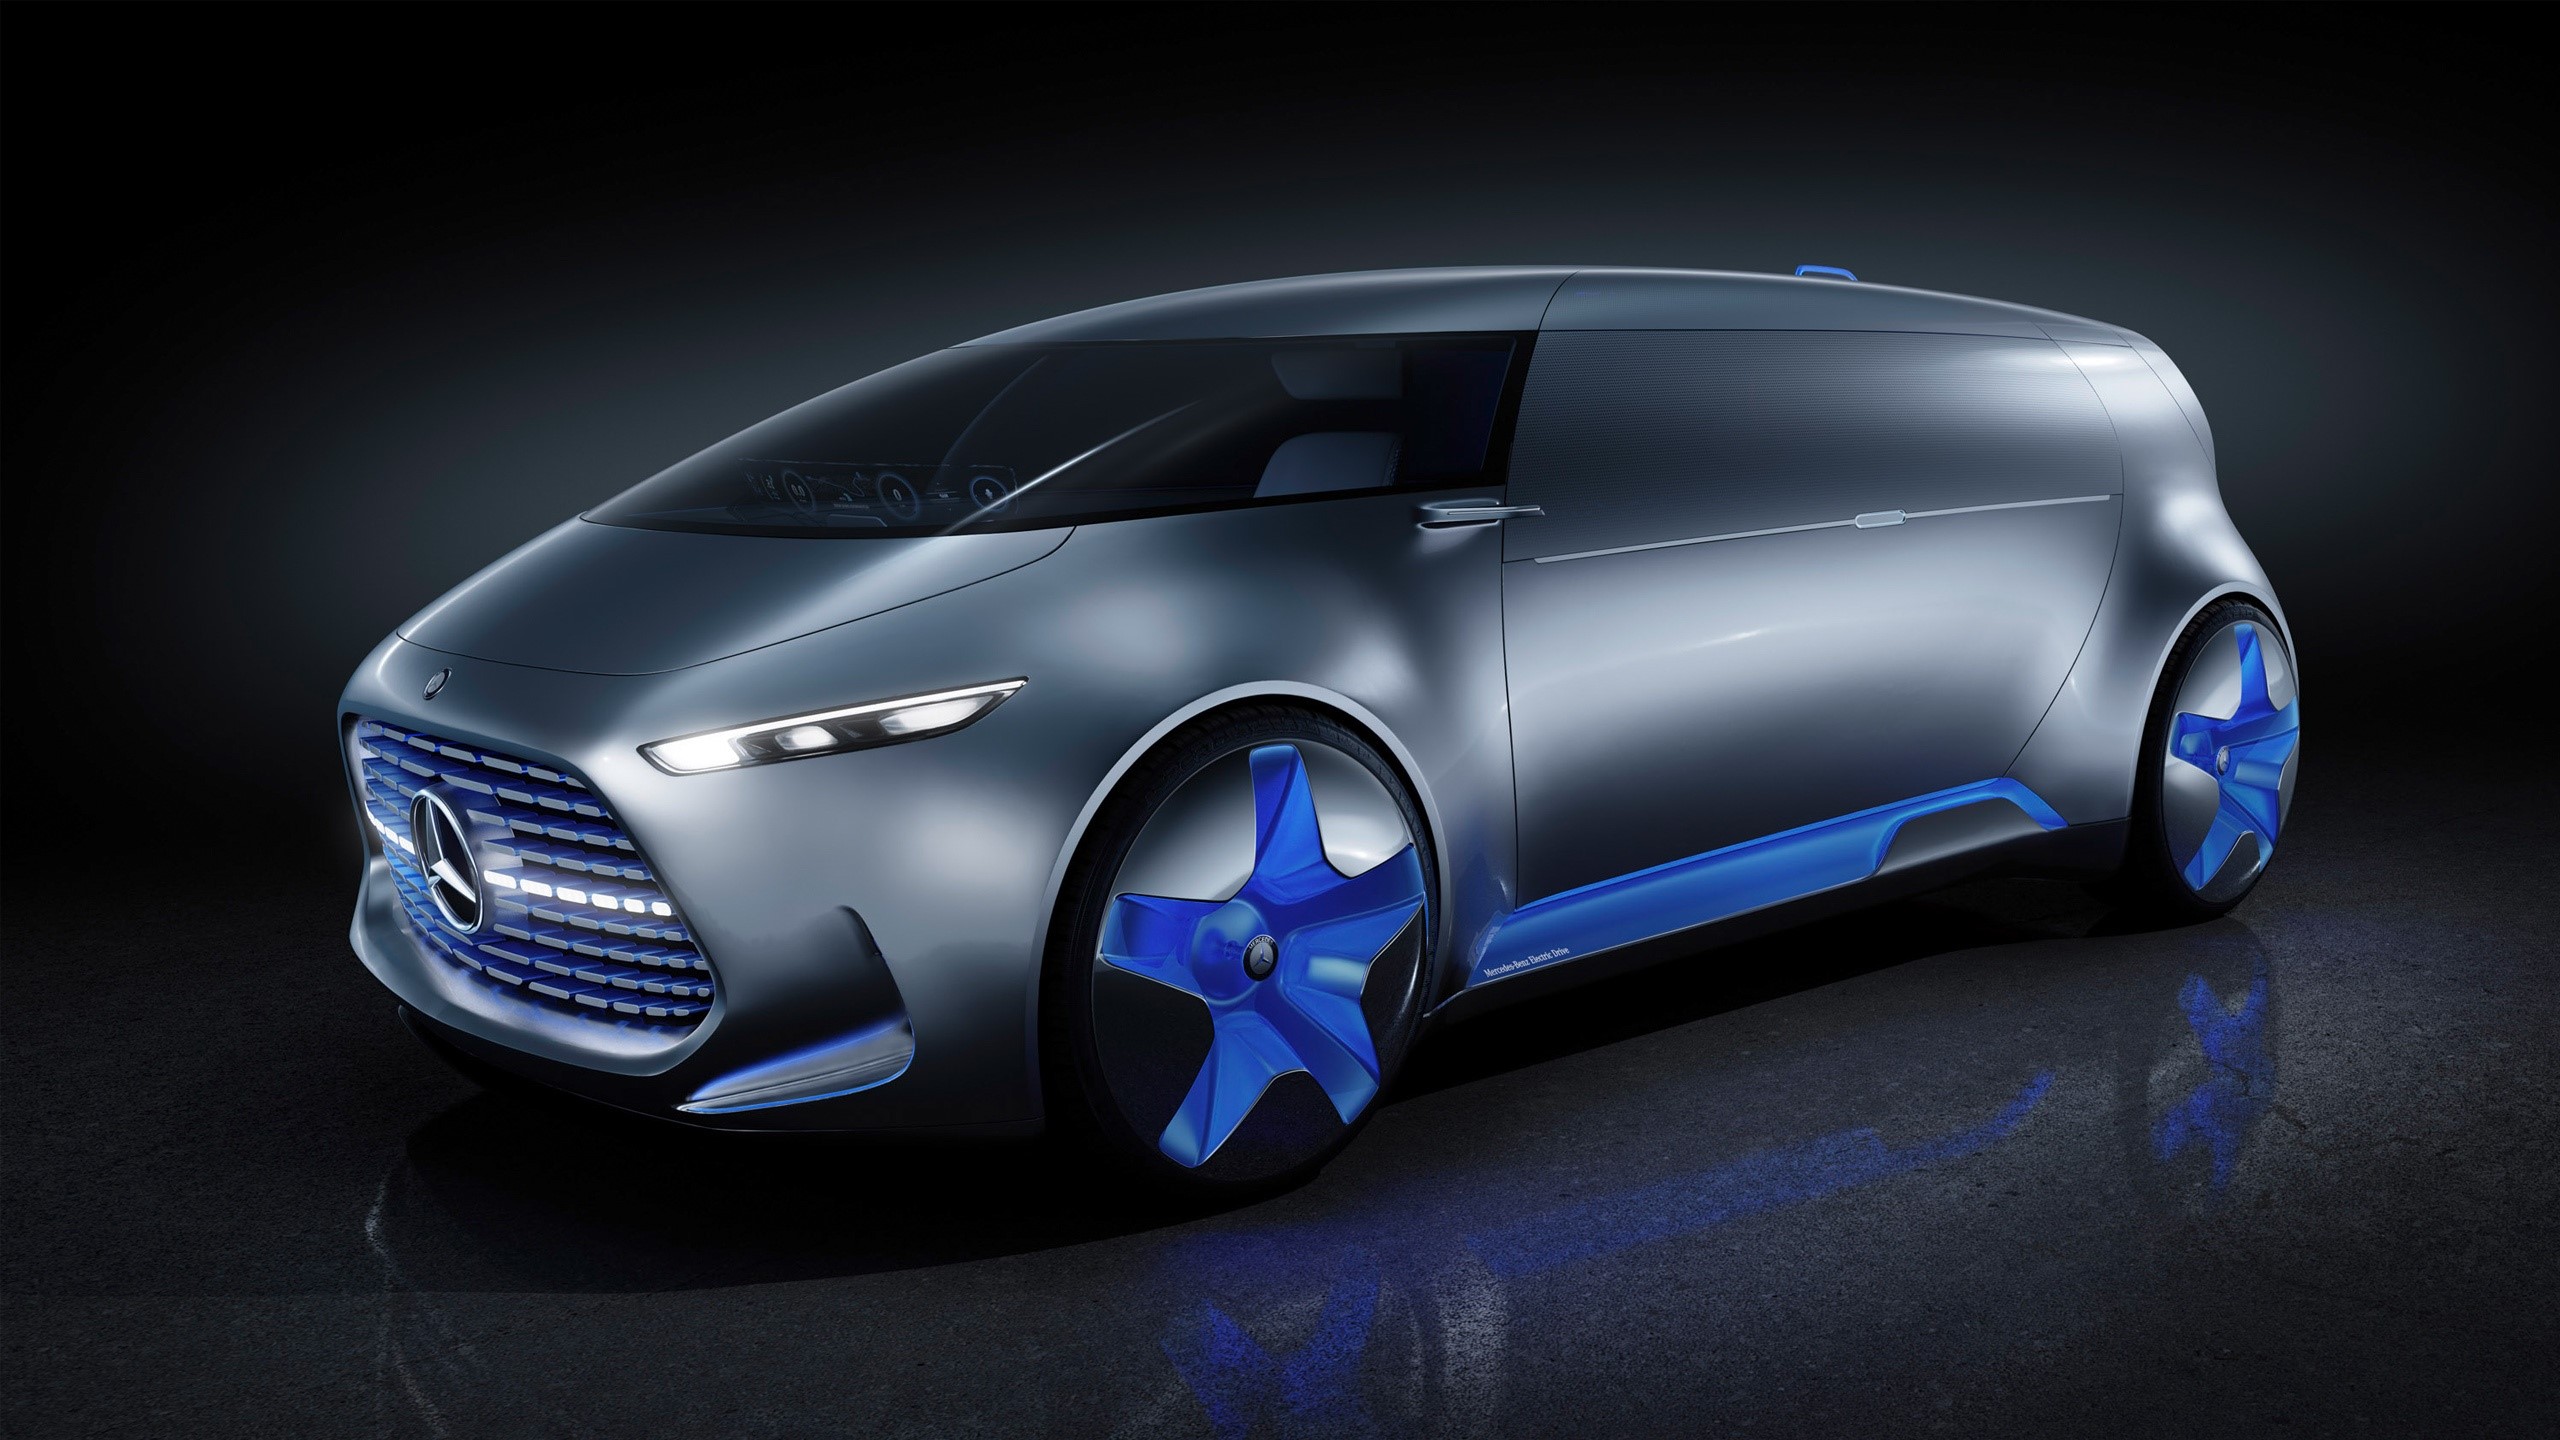 Fondos de pantalla Mercedes Benz Vision Tokyo Concept